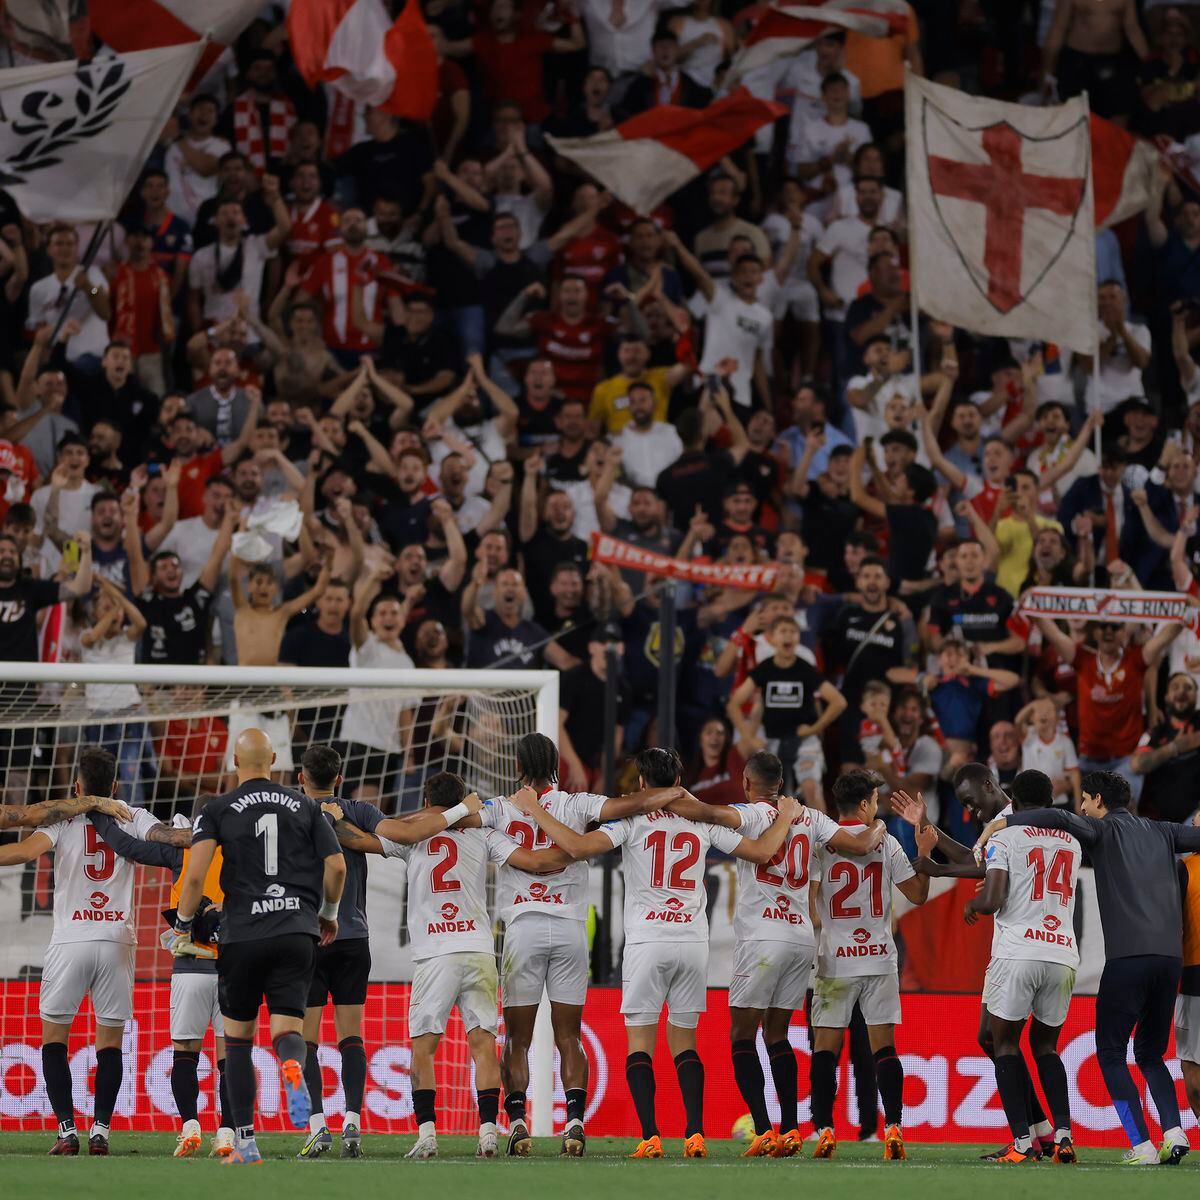 Dónde será la celebración del Sevilla FC de su séptima Europa League?